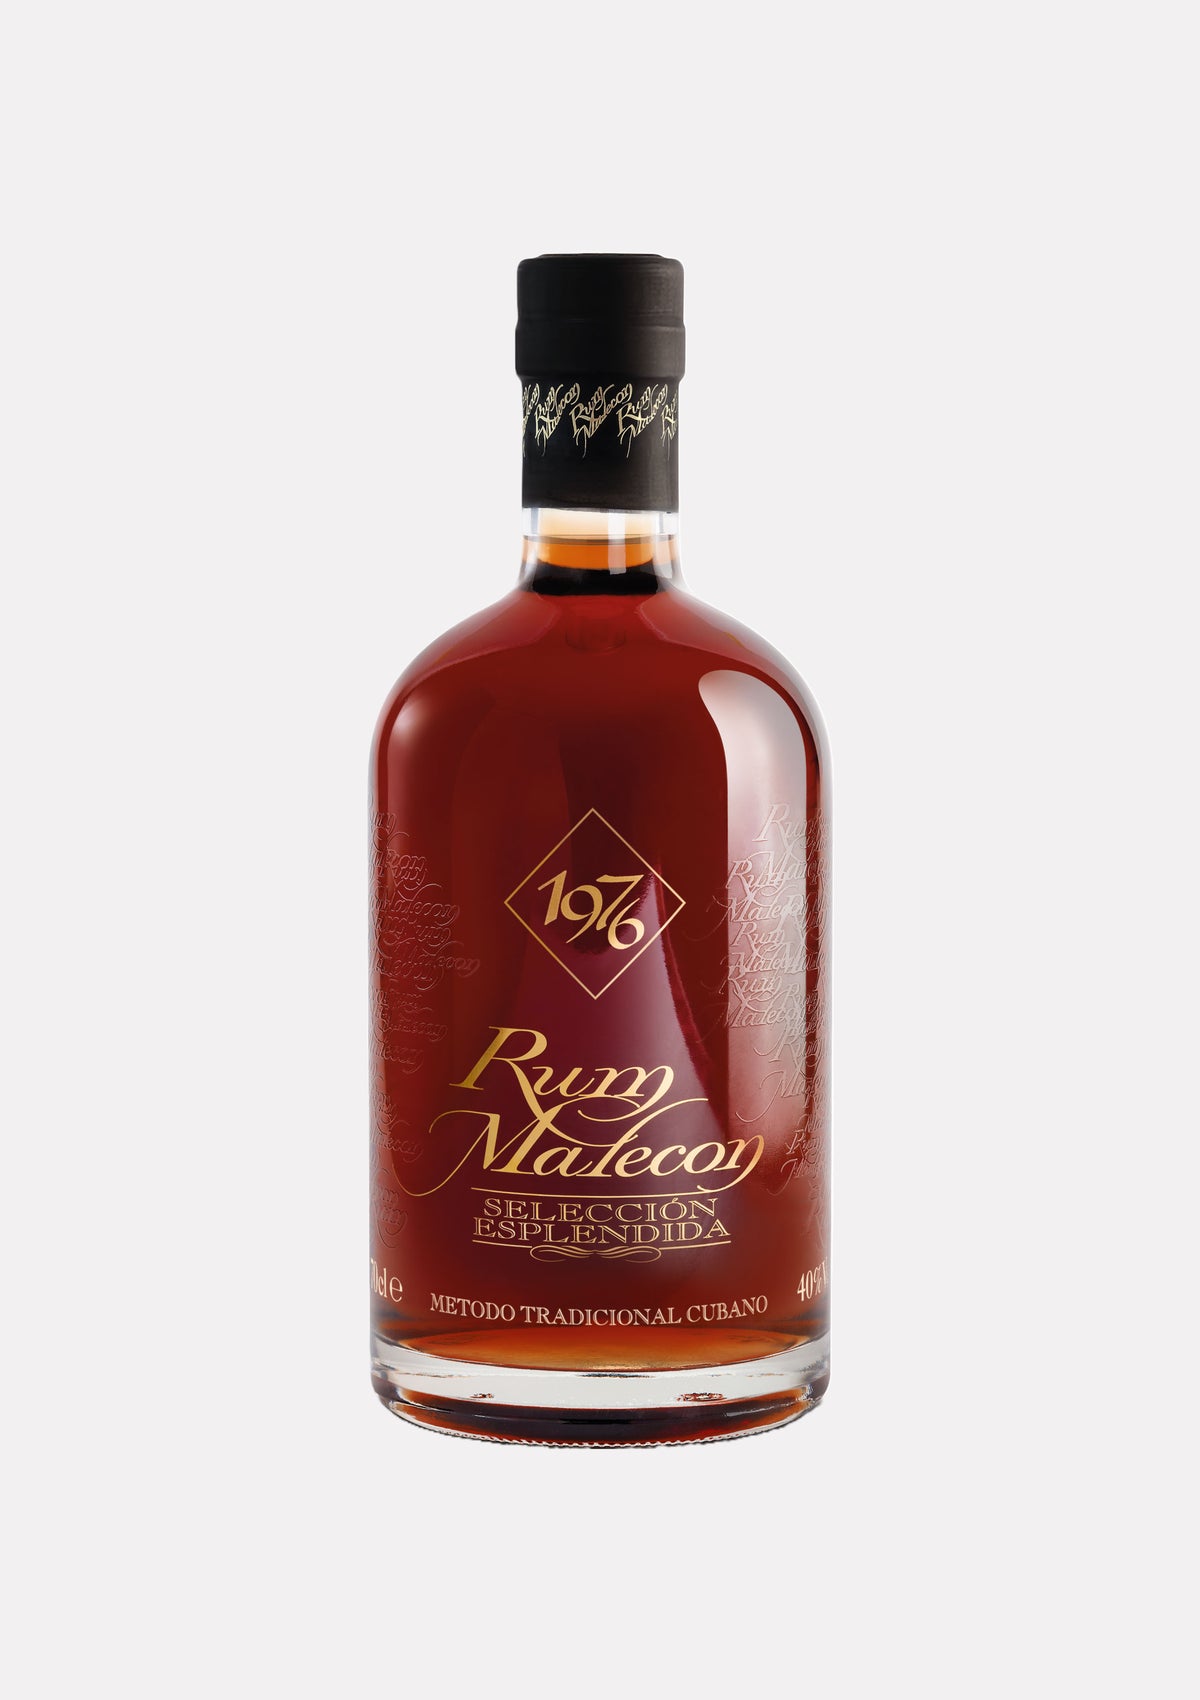 Rum Malecon Seleccion Esplendida Vintage 1976